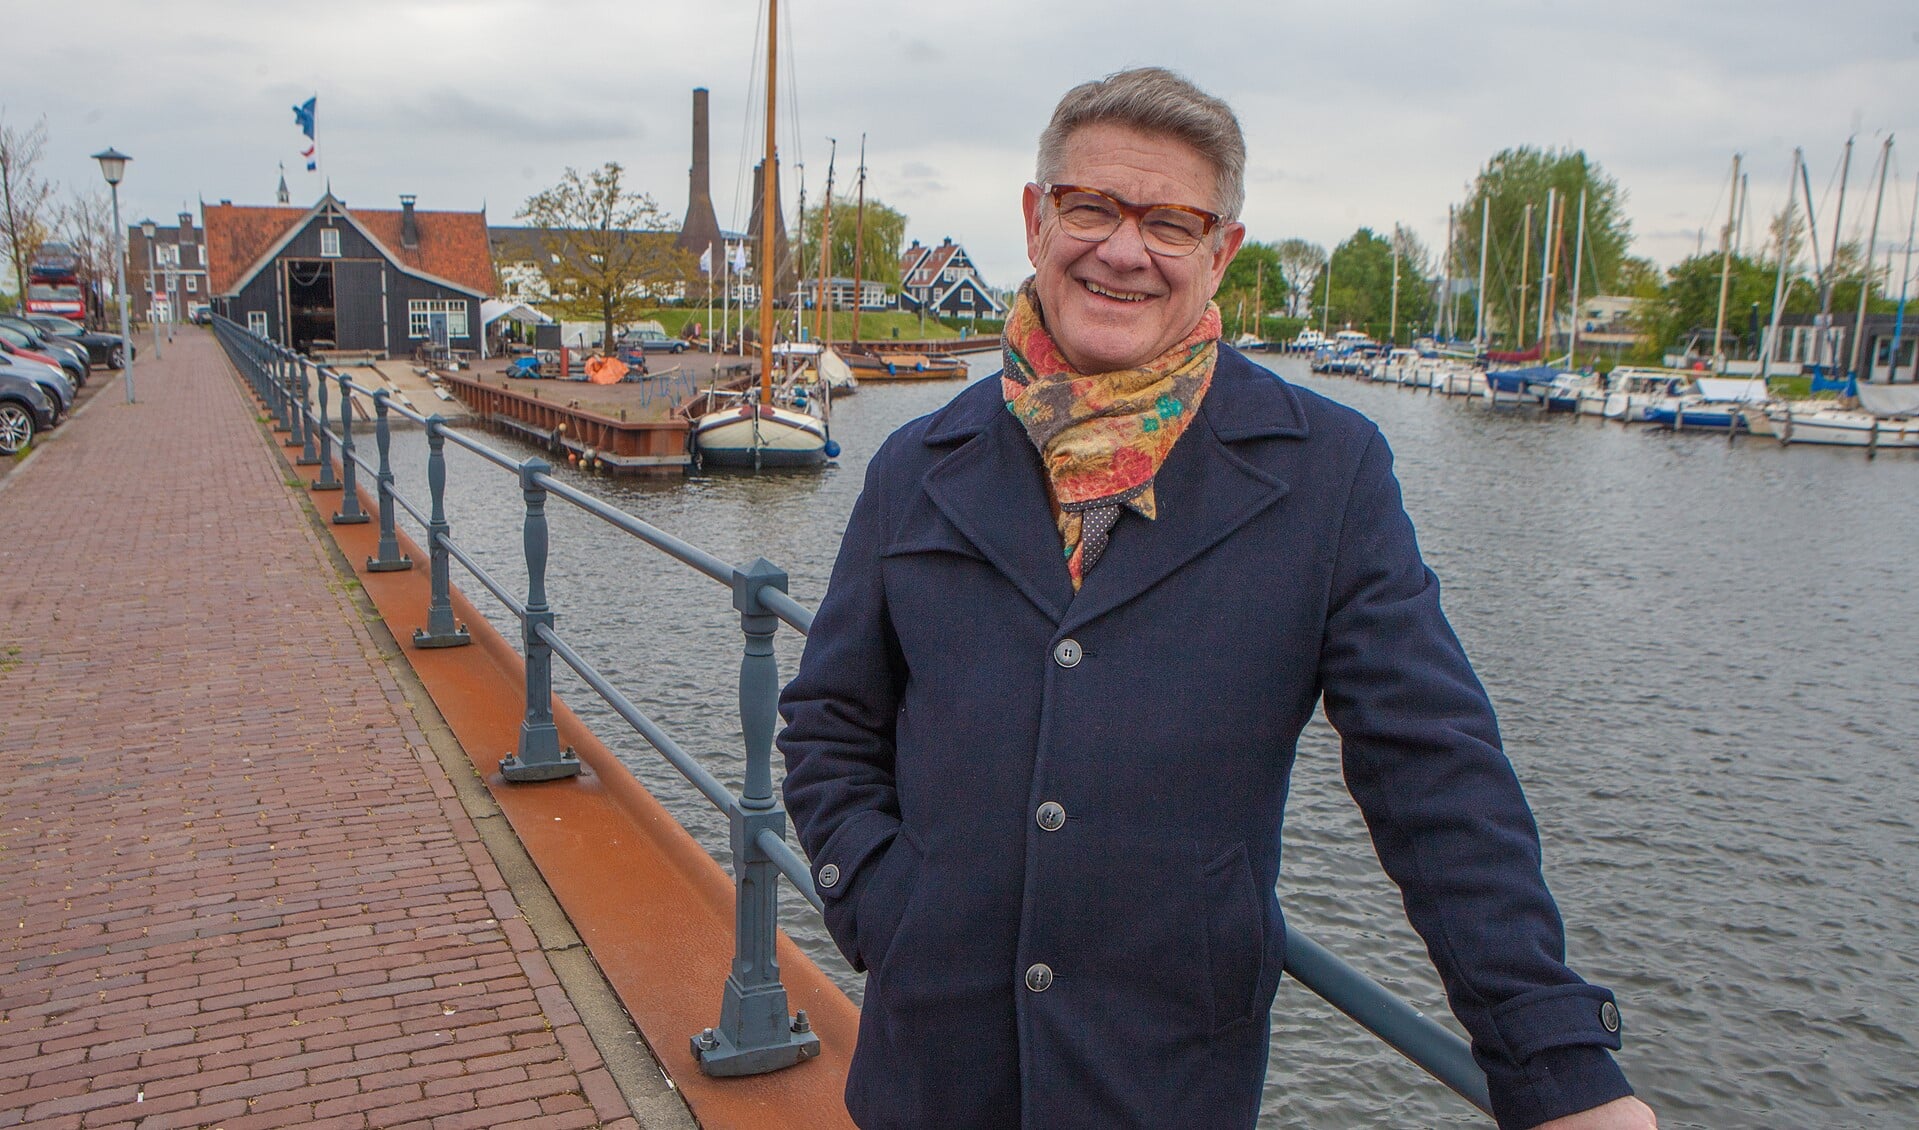 Hans van den Brink bij de haven, die een grote rol speelt in het DNA van het dorp.